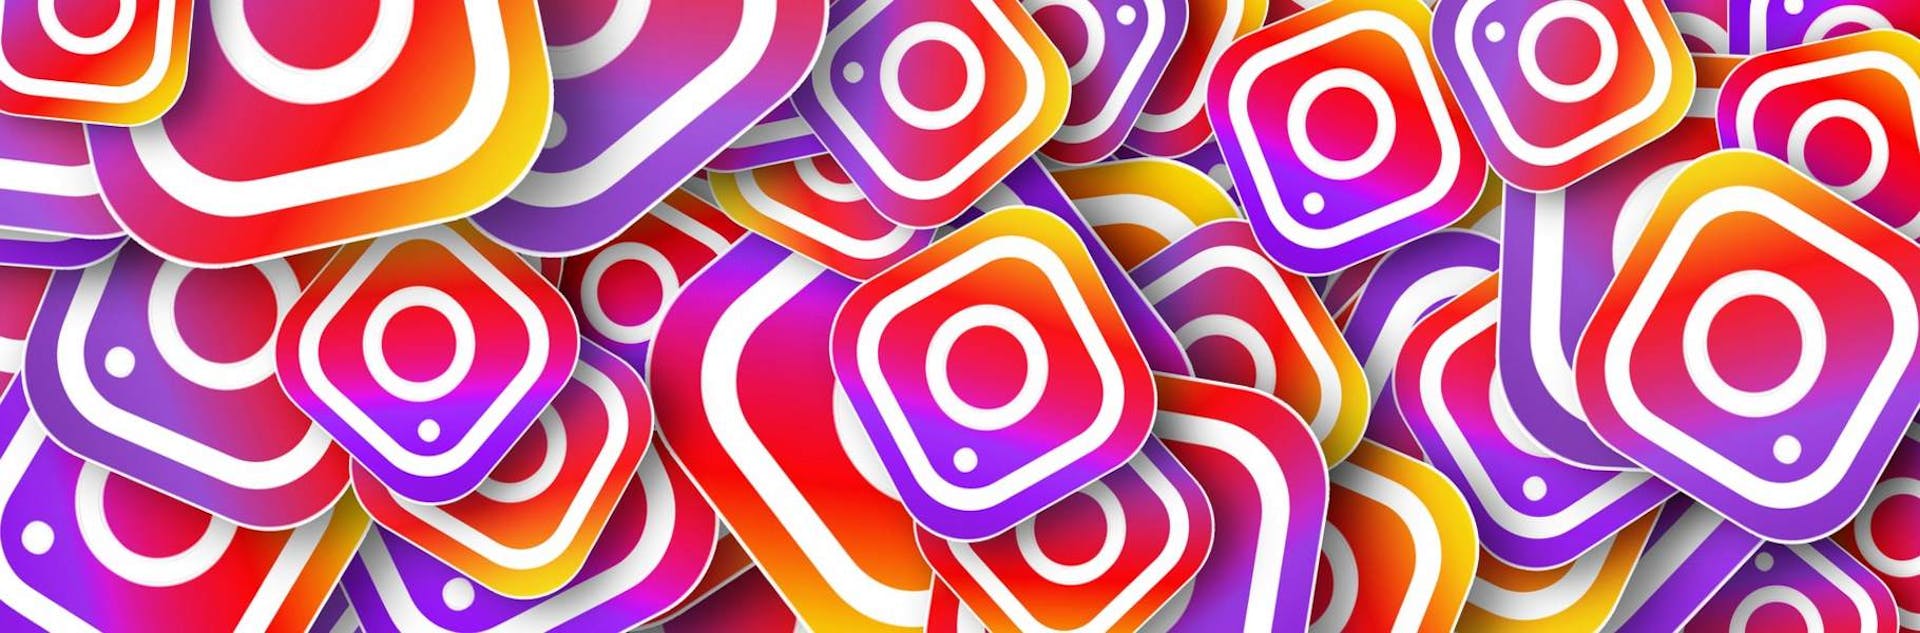 ¿Cómo usar Instagram? La guía completa para impulsar tu emprendimiento y obtener un reconocimiento masivo